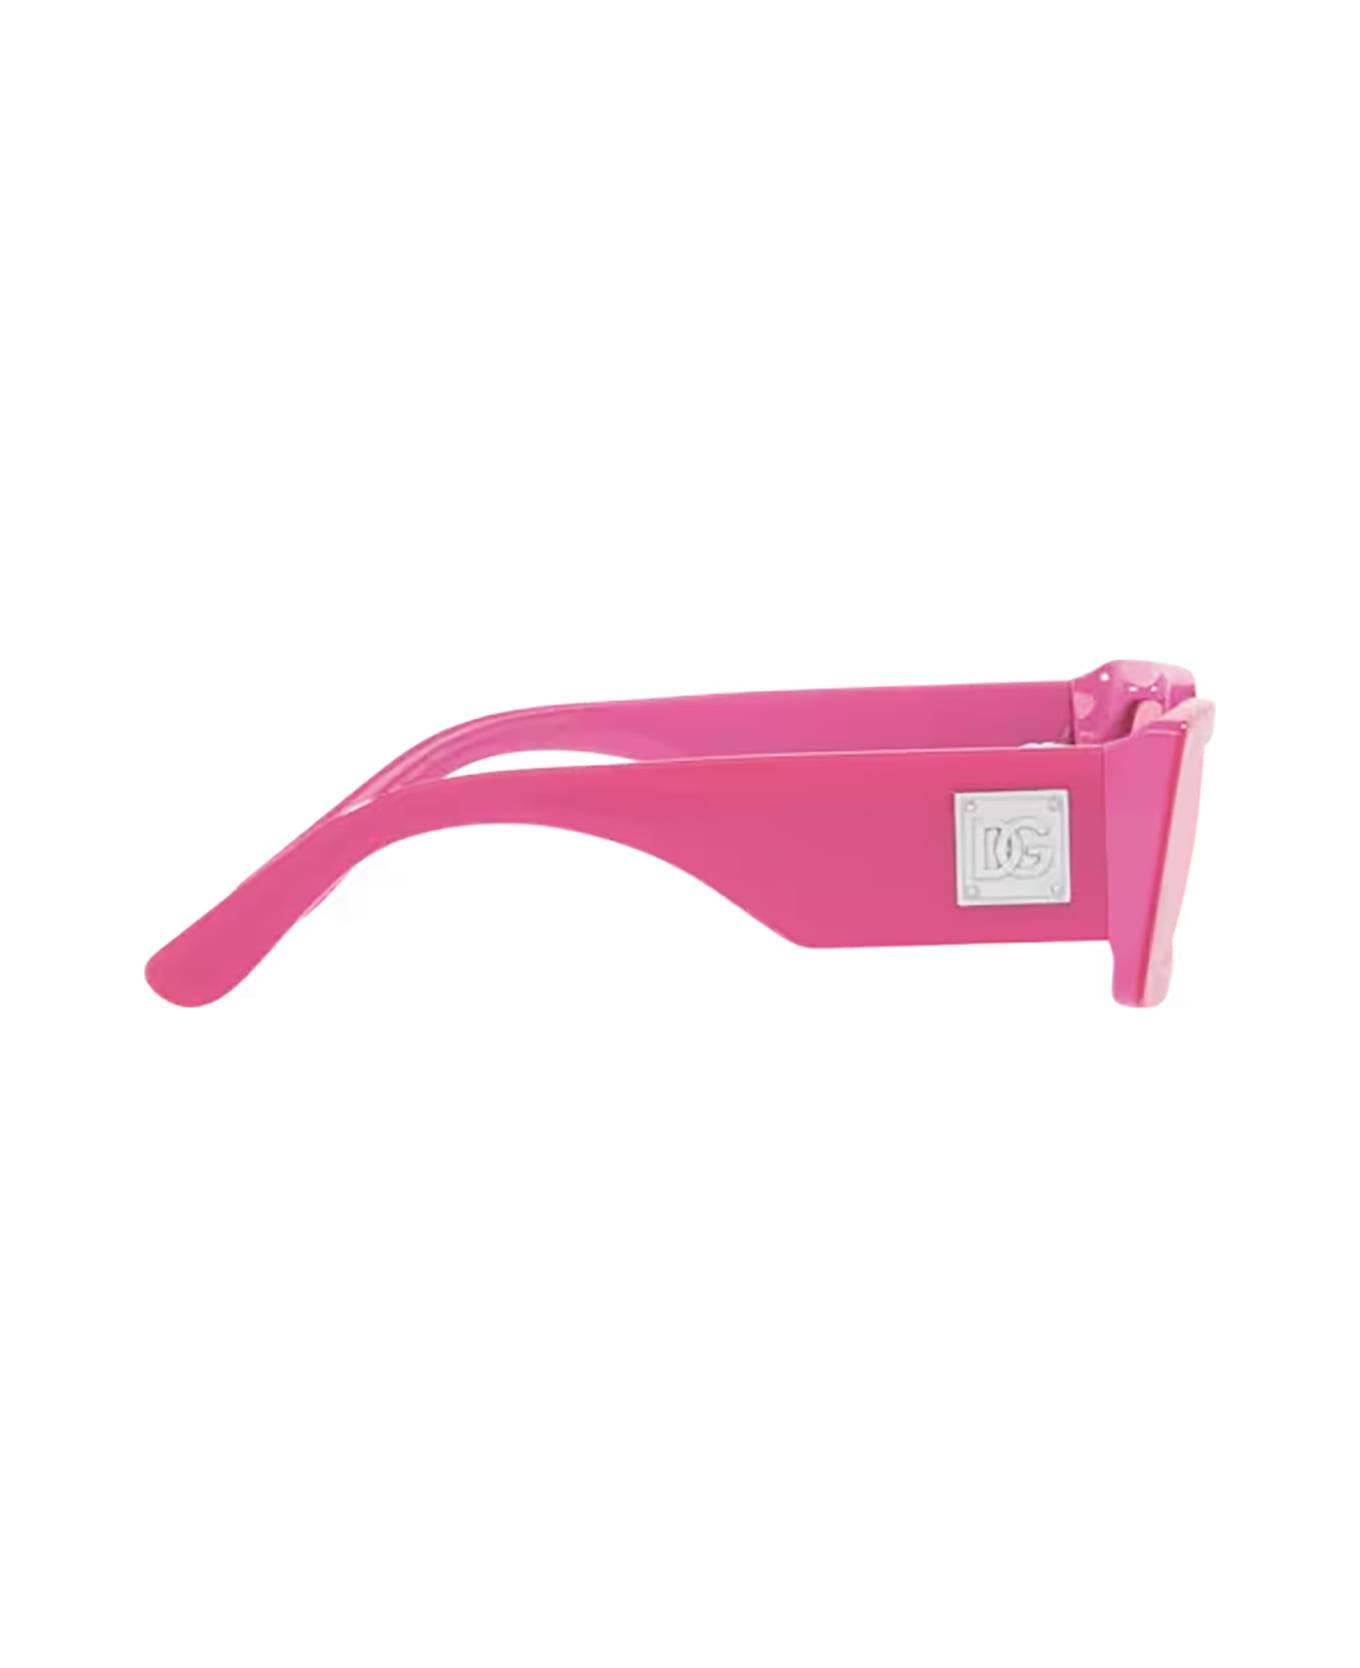 Dolce & Gabbana Eyewear Dg4416 Metallic Pink Sunglasses - Metallic Pink